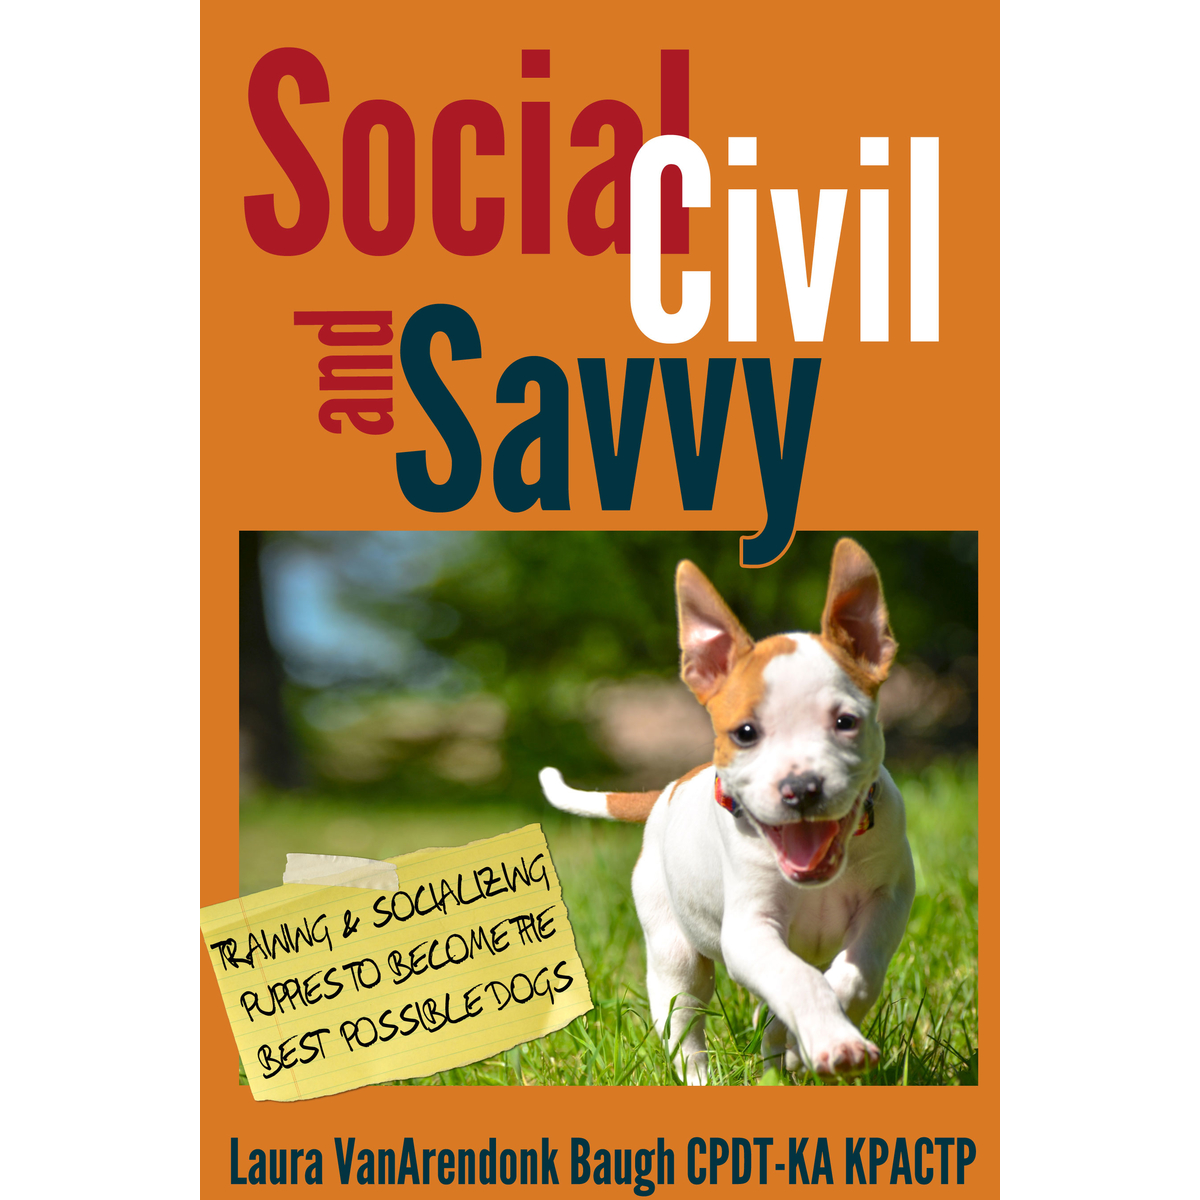 Social, Civil, & Savvy by Laura VanArendonk Baugh CPDT-KA KPACTP ebook